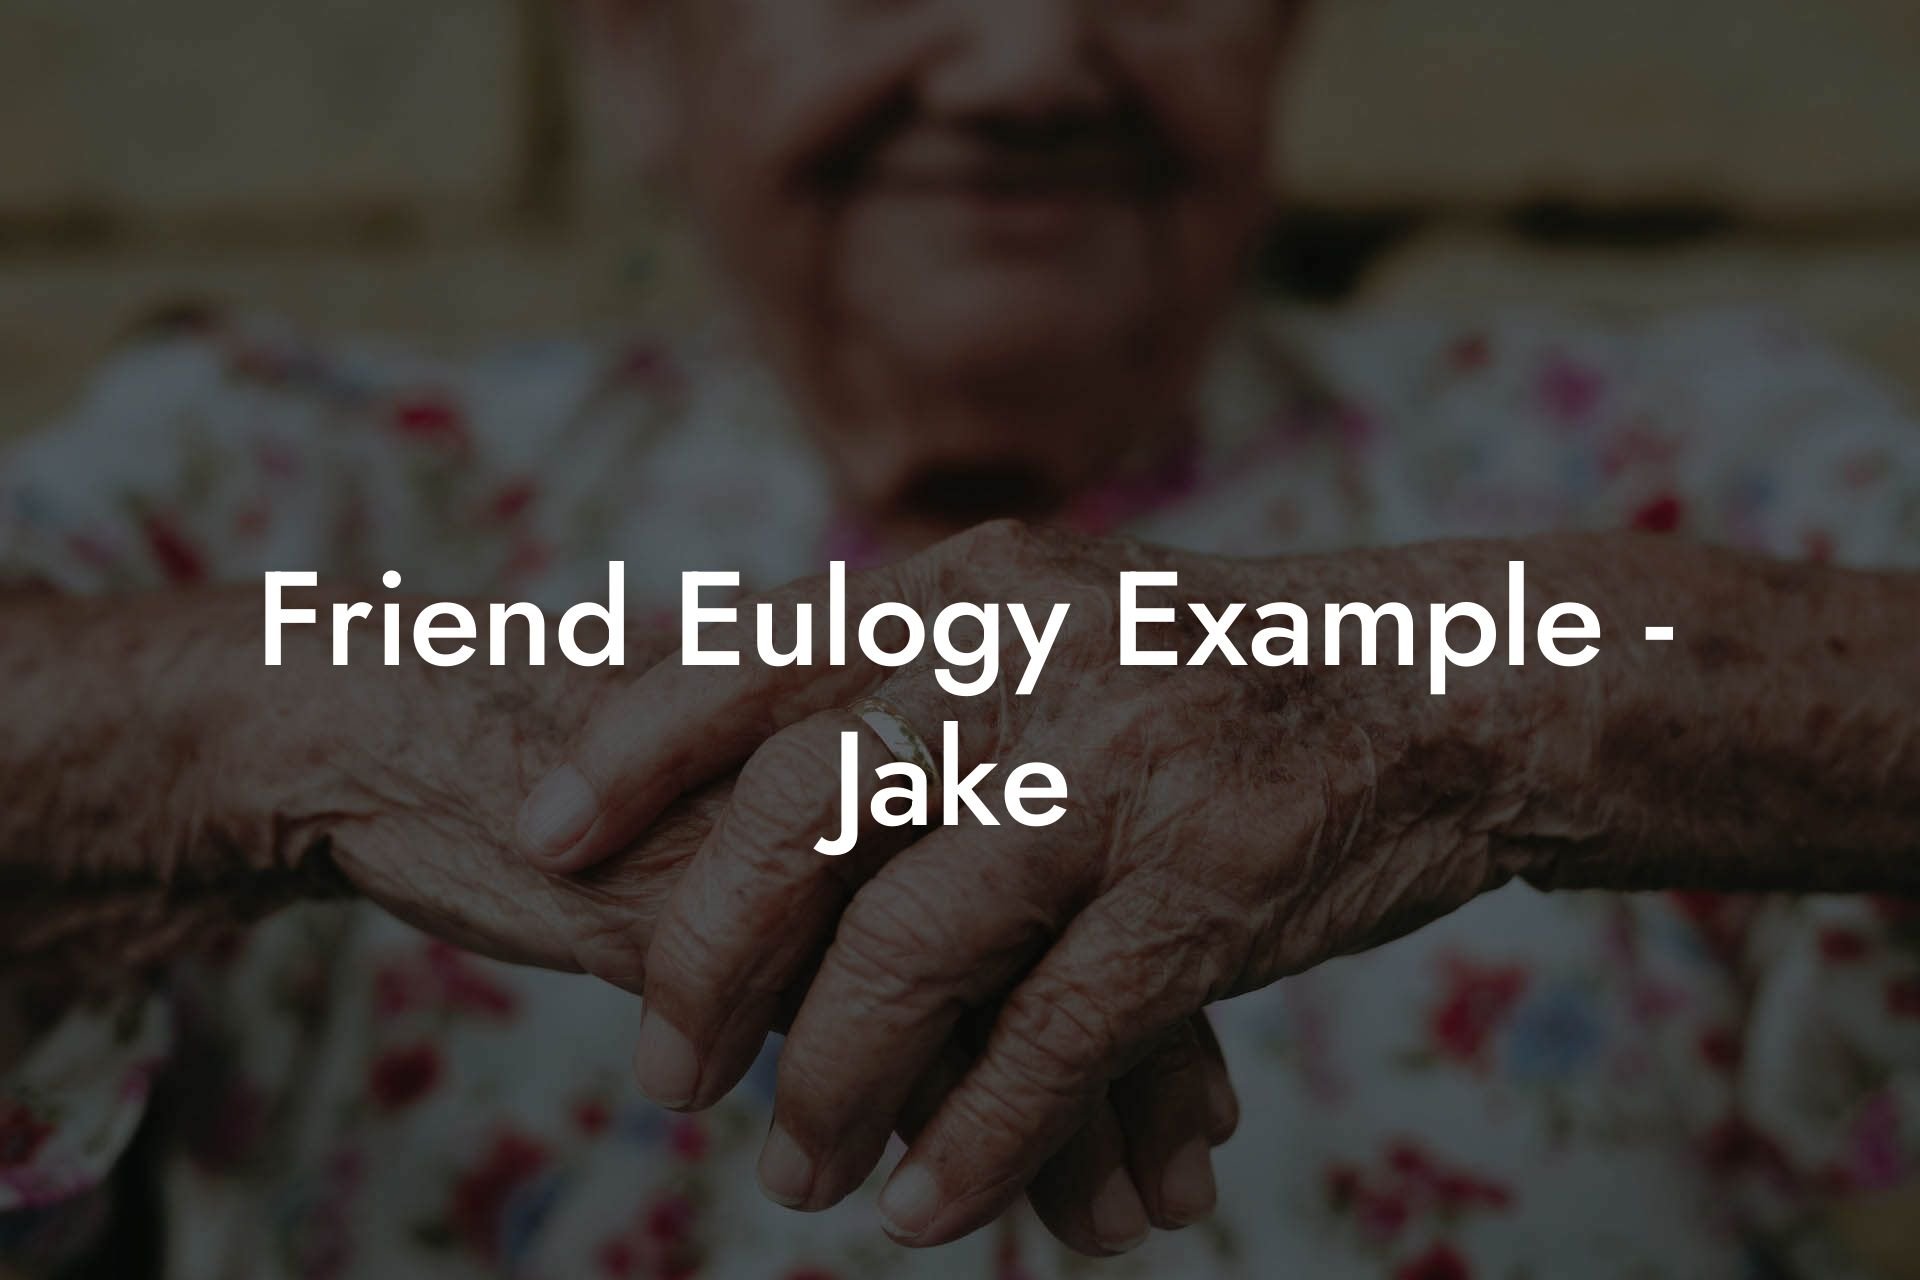 Friend Eulogy Example - Jake